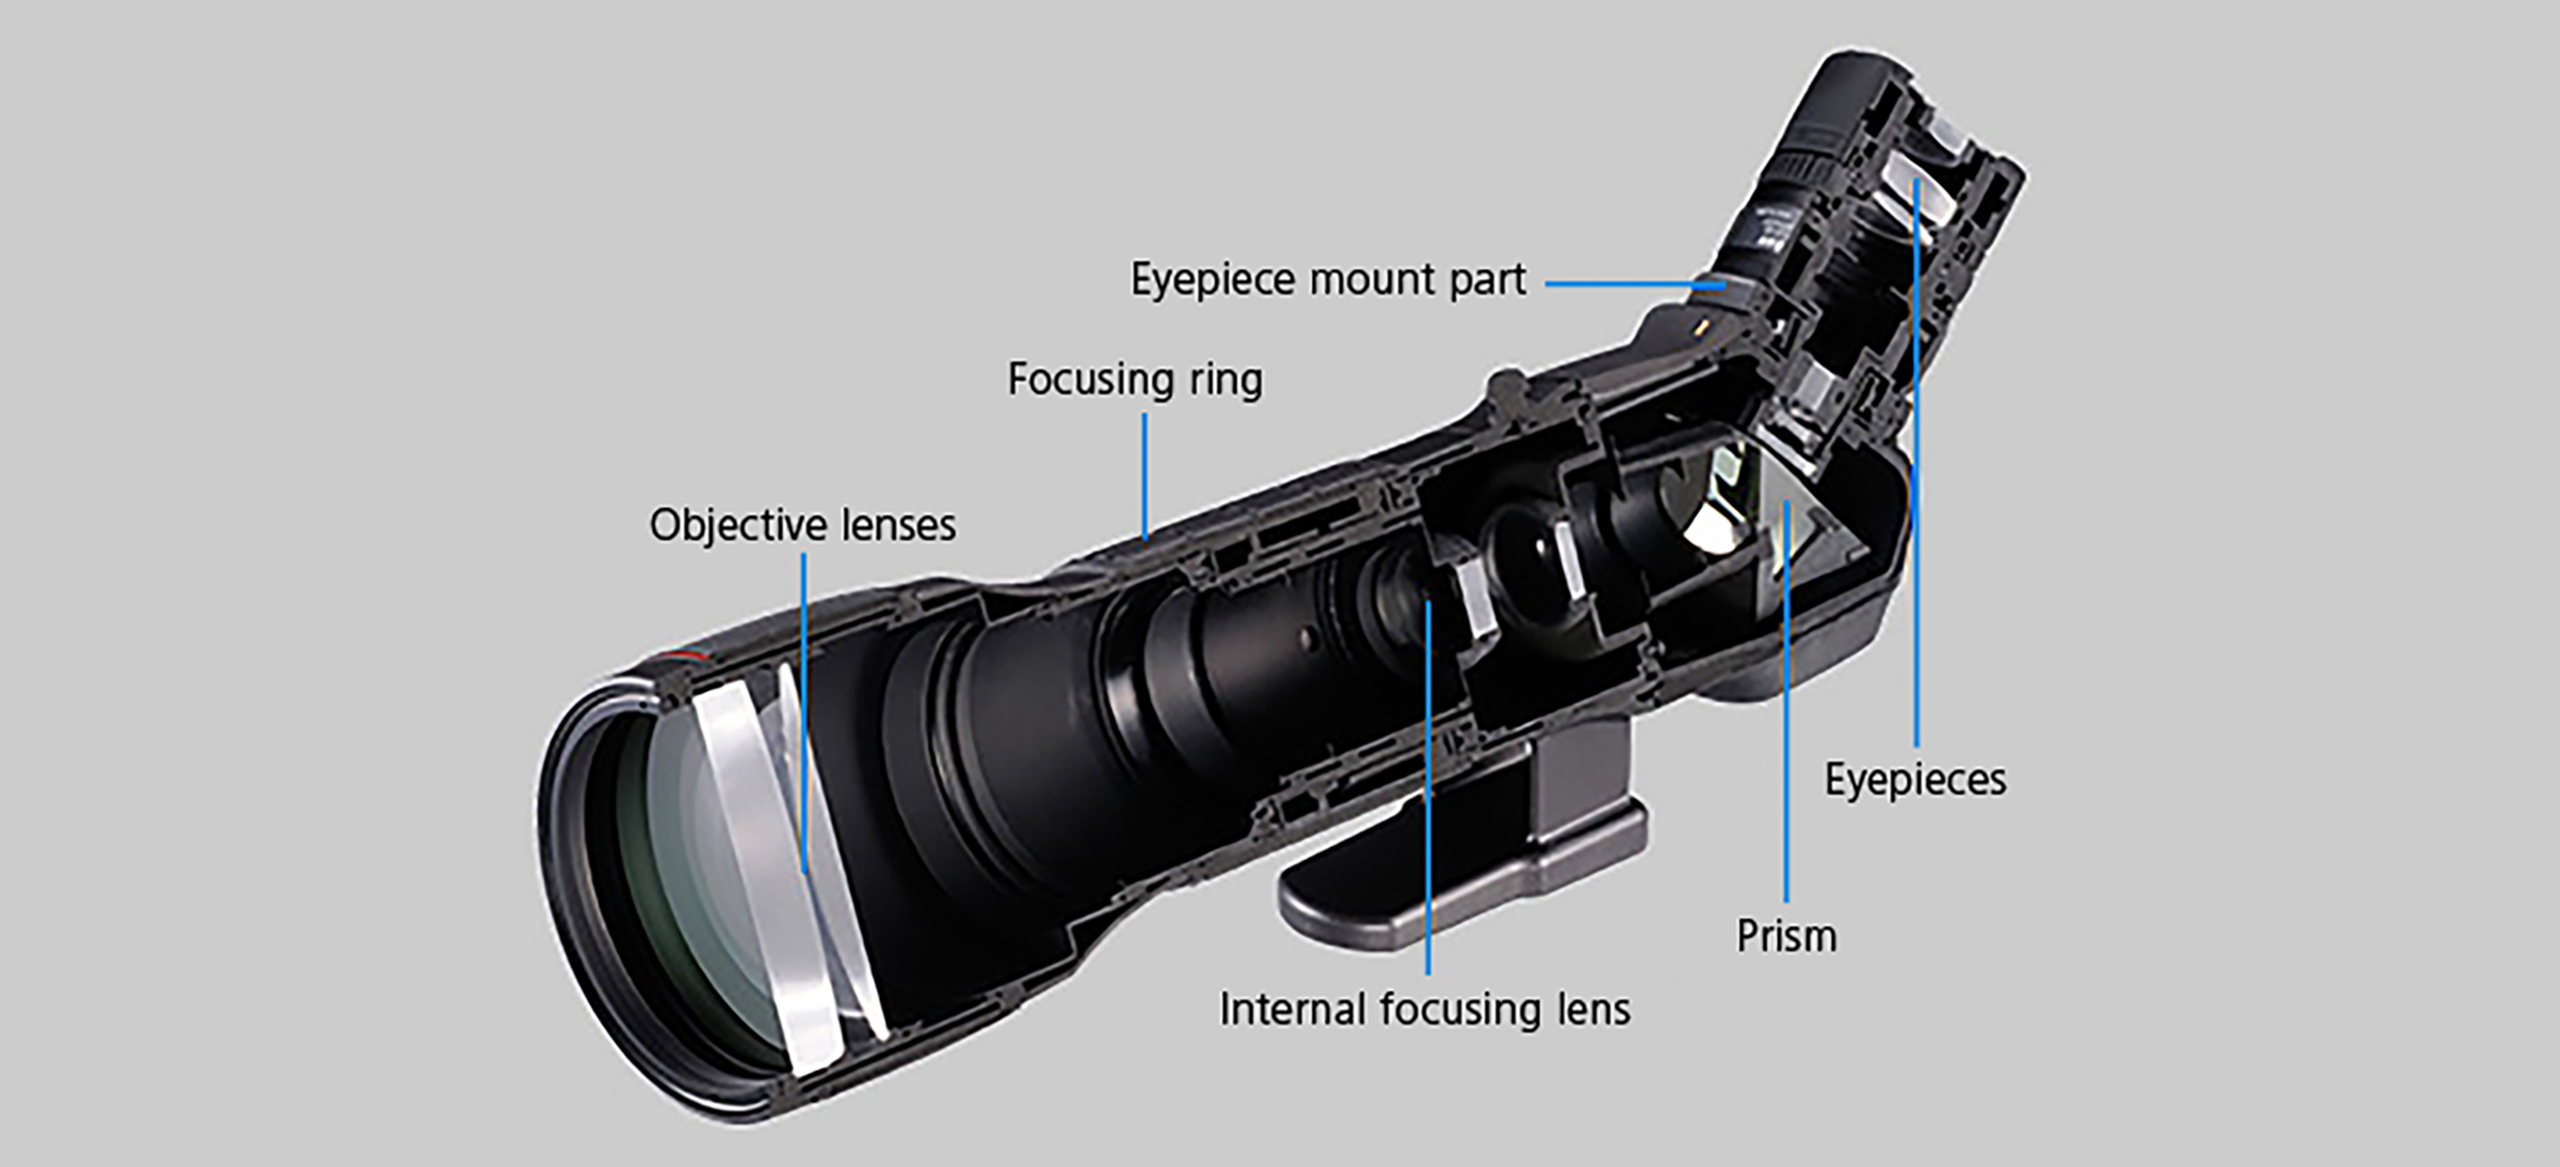 What is a Fieldscope? | Sport Optics Guide -Fieldscopes- | Nikon Consumer